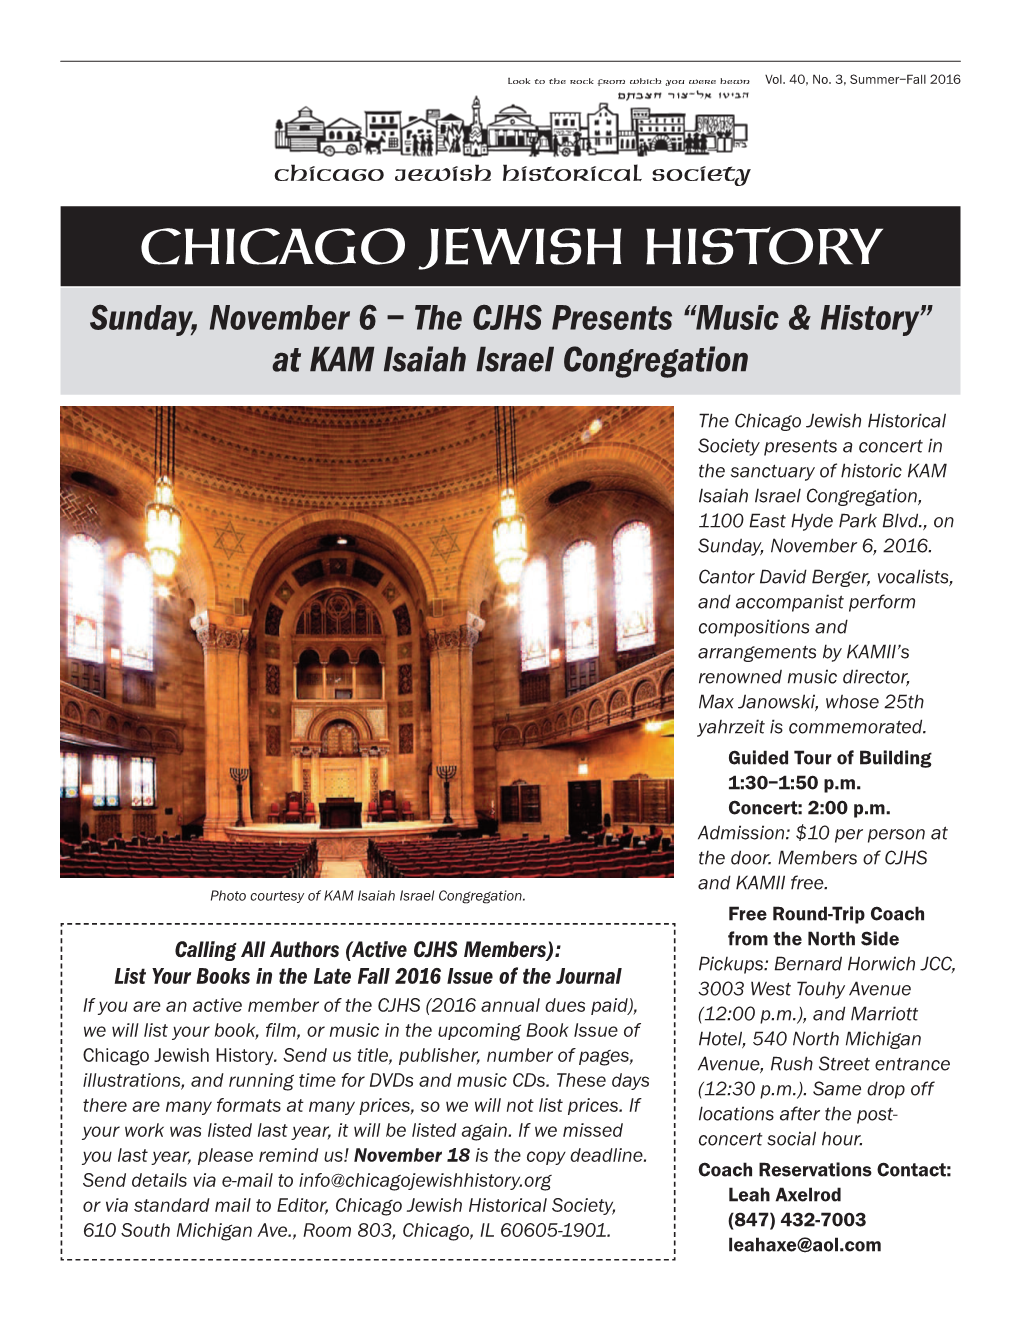 CHICAGO JEWISH HISTORY Sunday, November 6 – the CJHS Presents “Music & History” at KAM Isaiah Israel Congregation